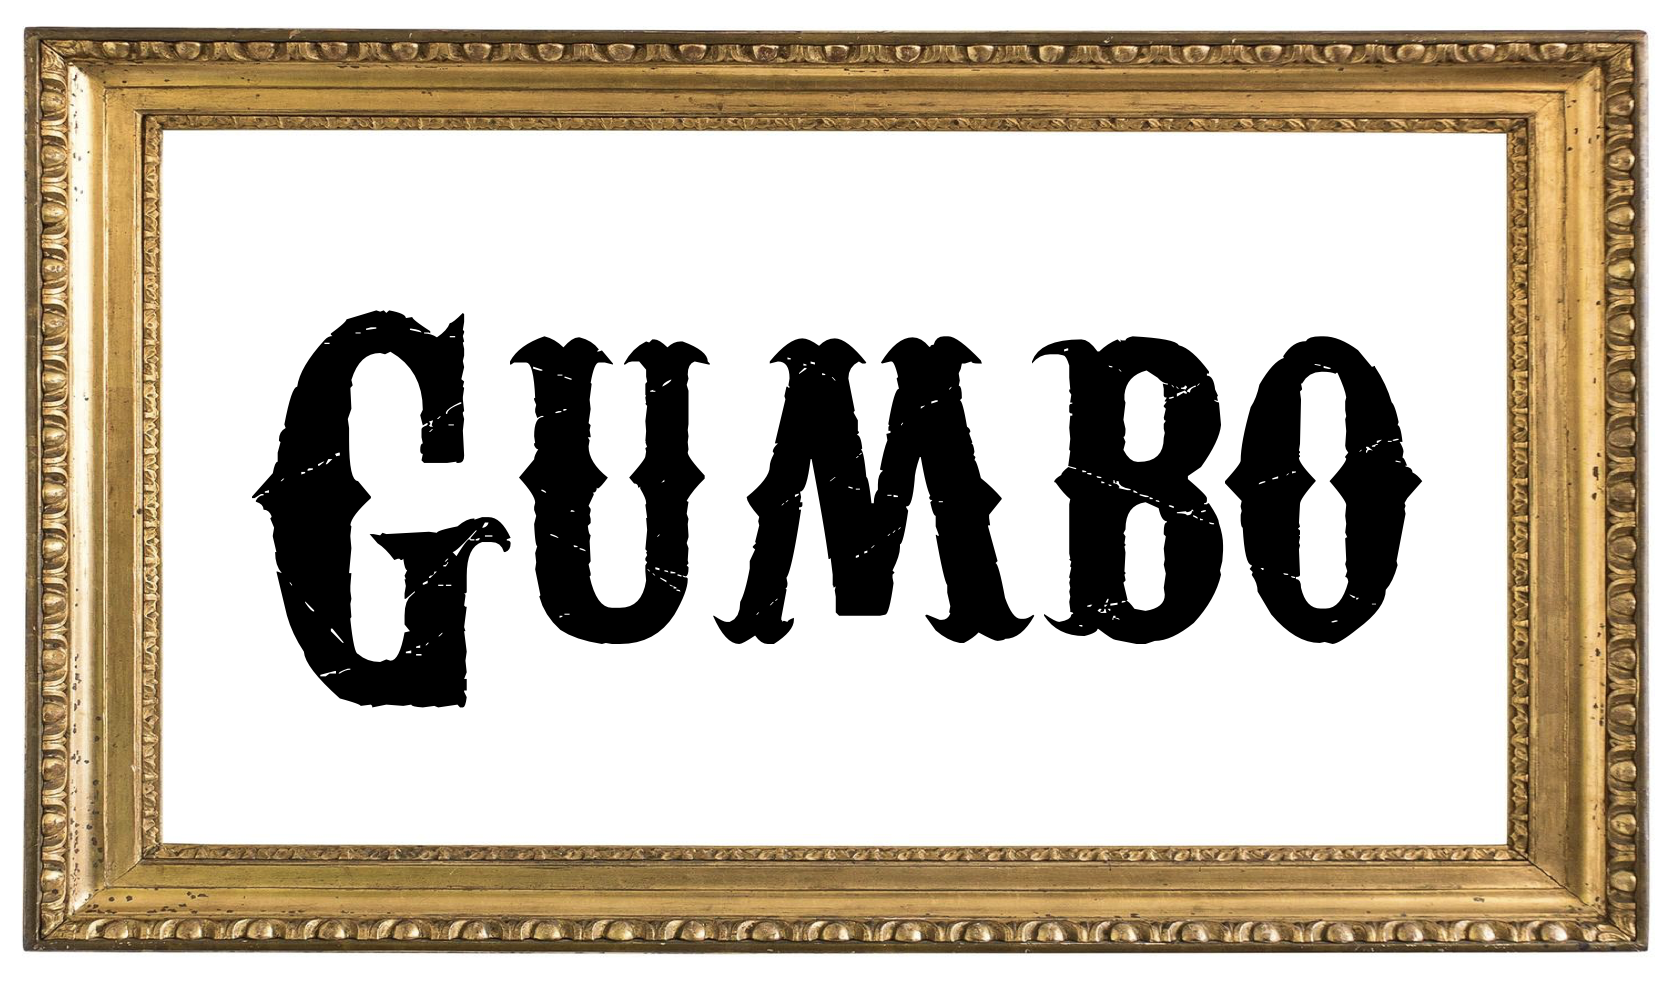 Easy Gumbo Recipe (Instant Pot)